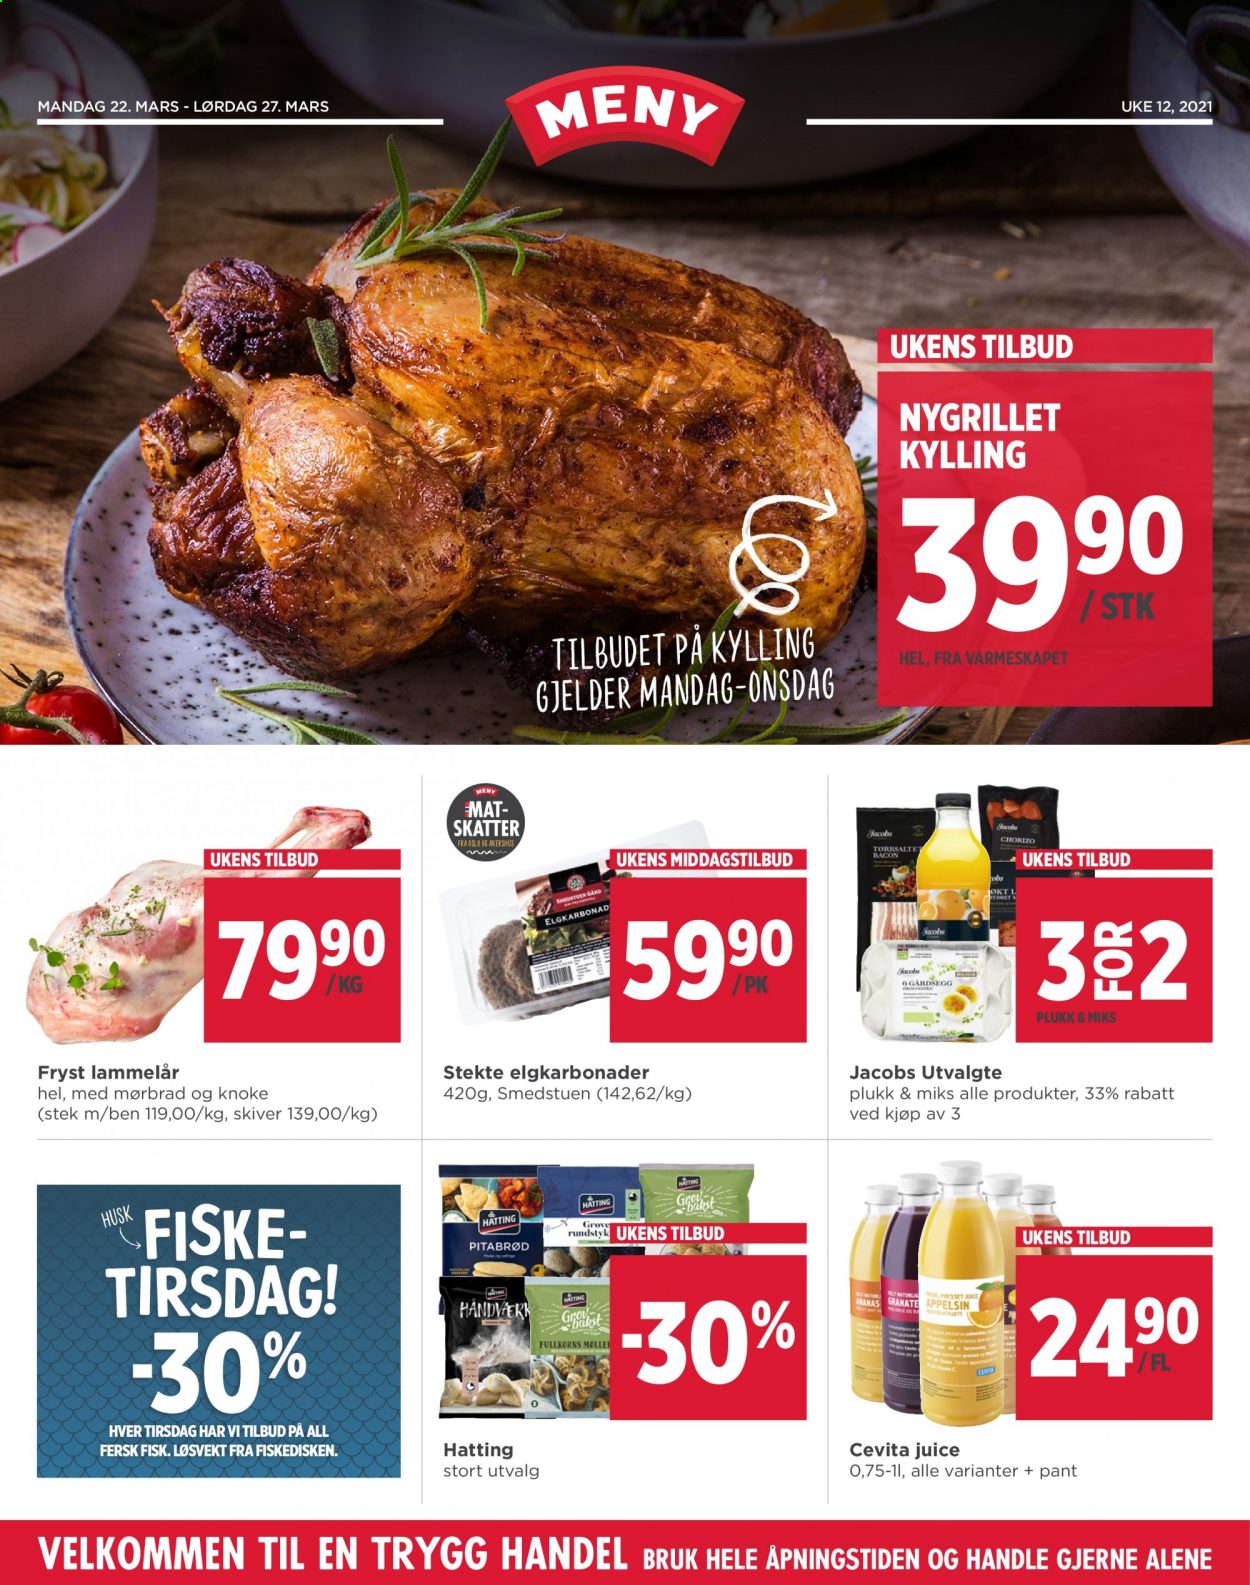 thumbnail - Kundeavis MENY - 22.3.2021 - 27.3.2021 - Produkter fra tilbudsaviser - lammekjøtt, lammelår, pitabrød, fisk, bacon, chorizo. Side 1.